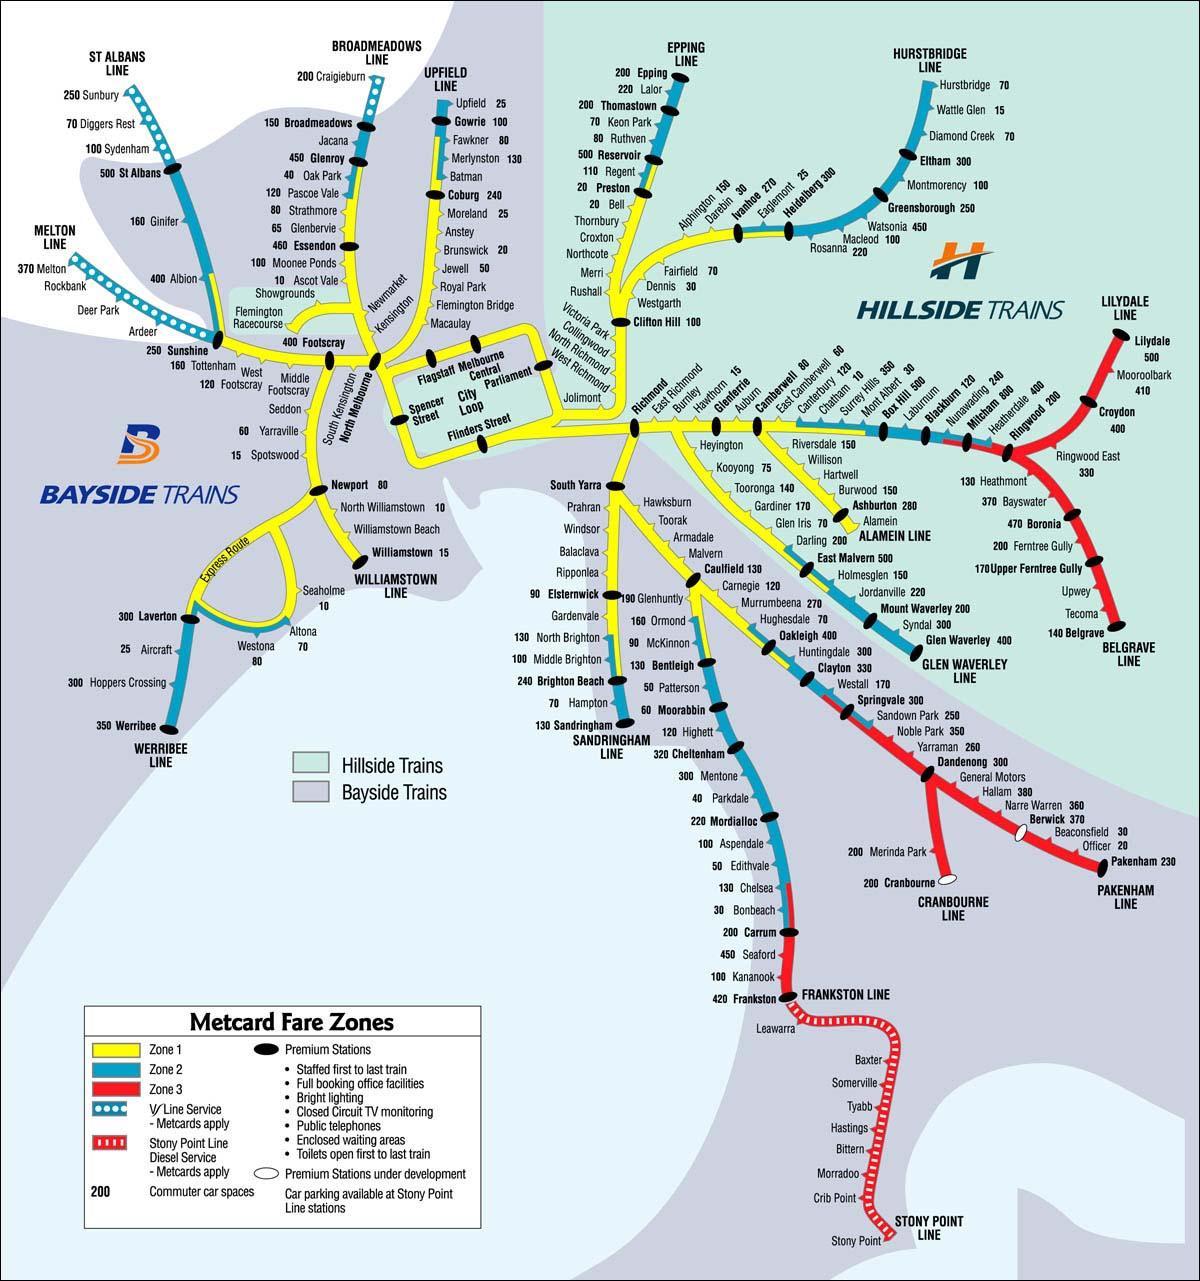 Мелбурн железничката станица мапа